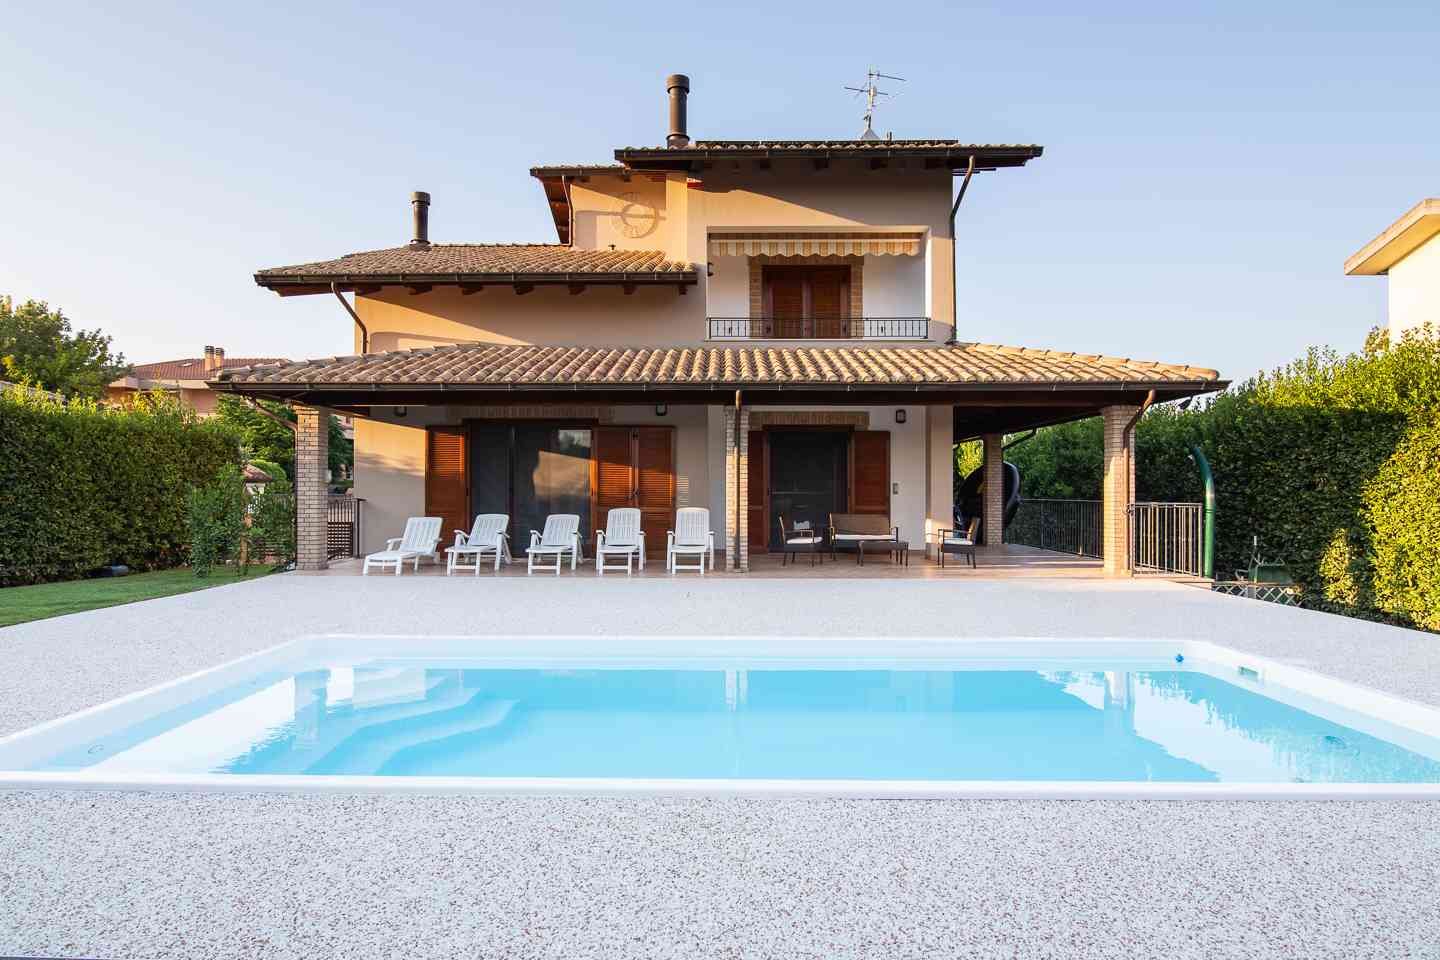 Casa indipendente Casa indipendente in vendita Collecorvino (PE), Villa Pini - Collecorvino - EUR 579.130 410 small